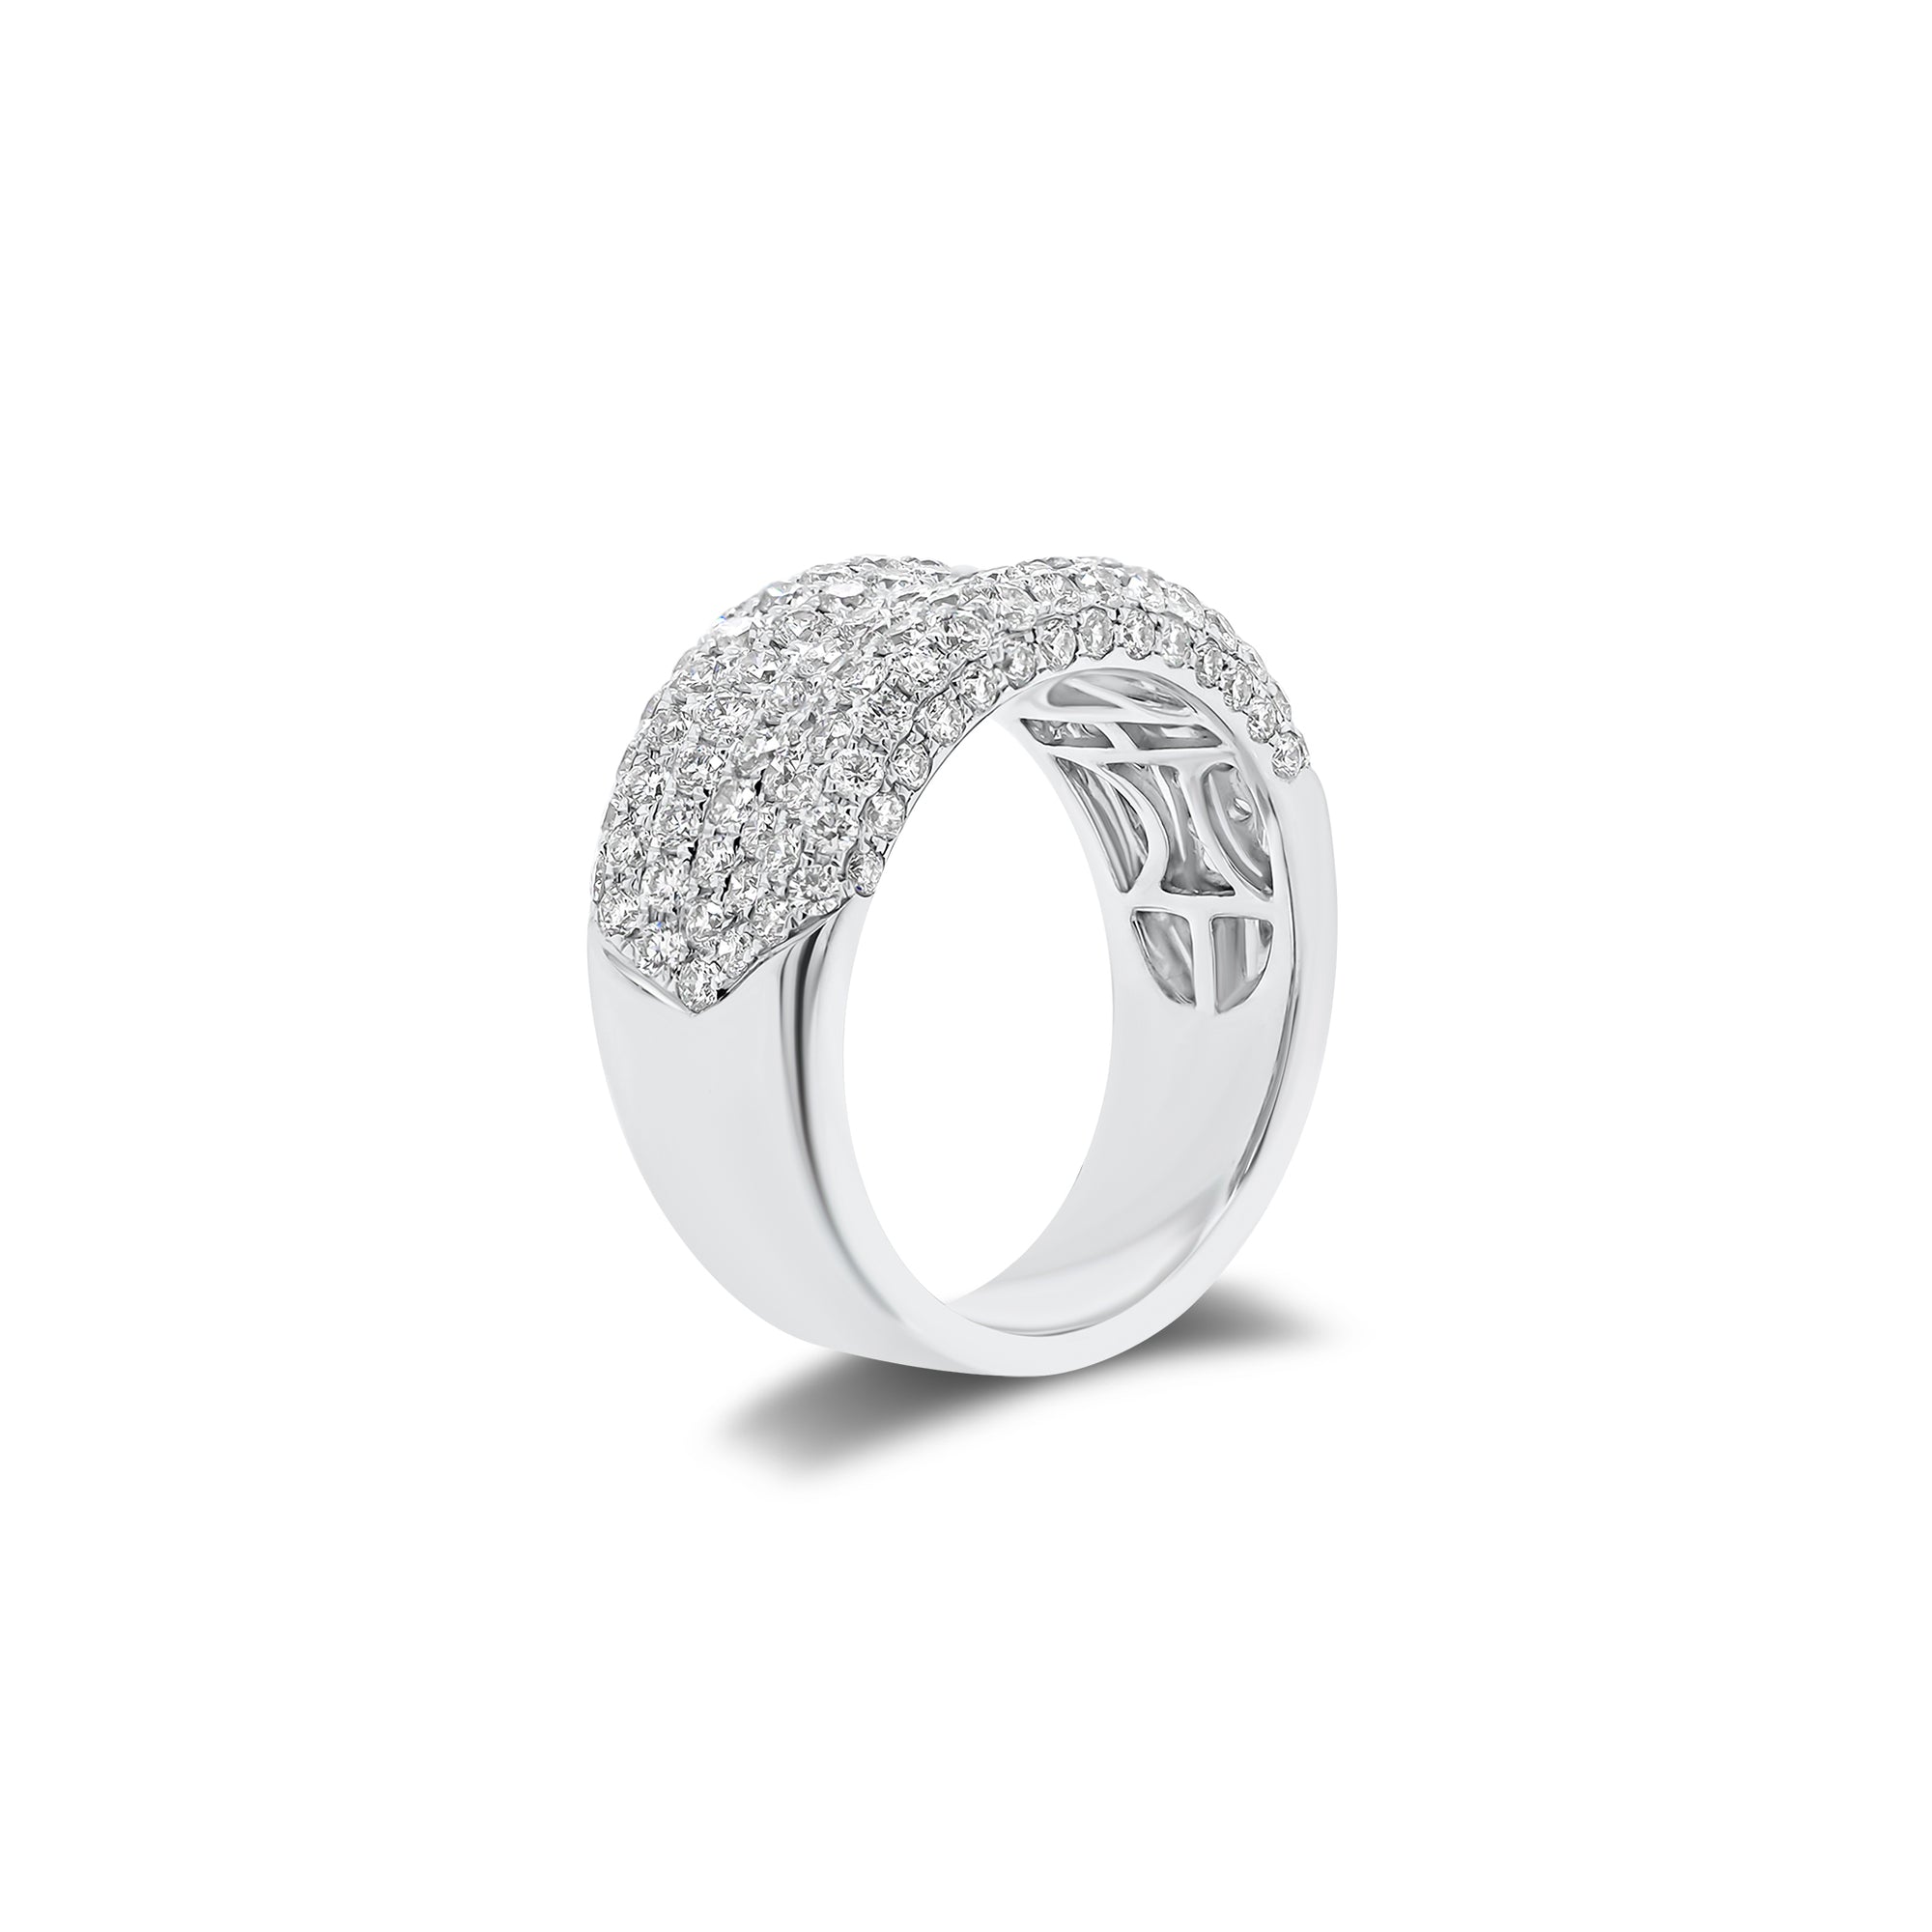 Pave Diamond Wedding Band - 18K gold weighing 8.60 grams  - 142 round diamonds weighing 1.86 carats